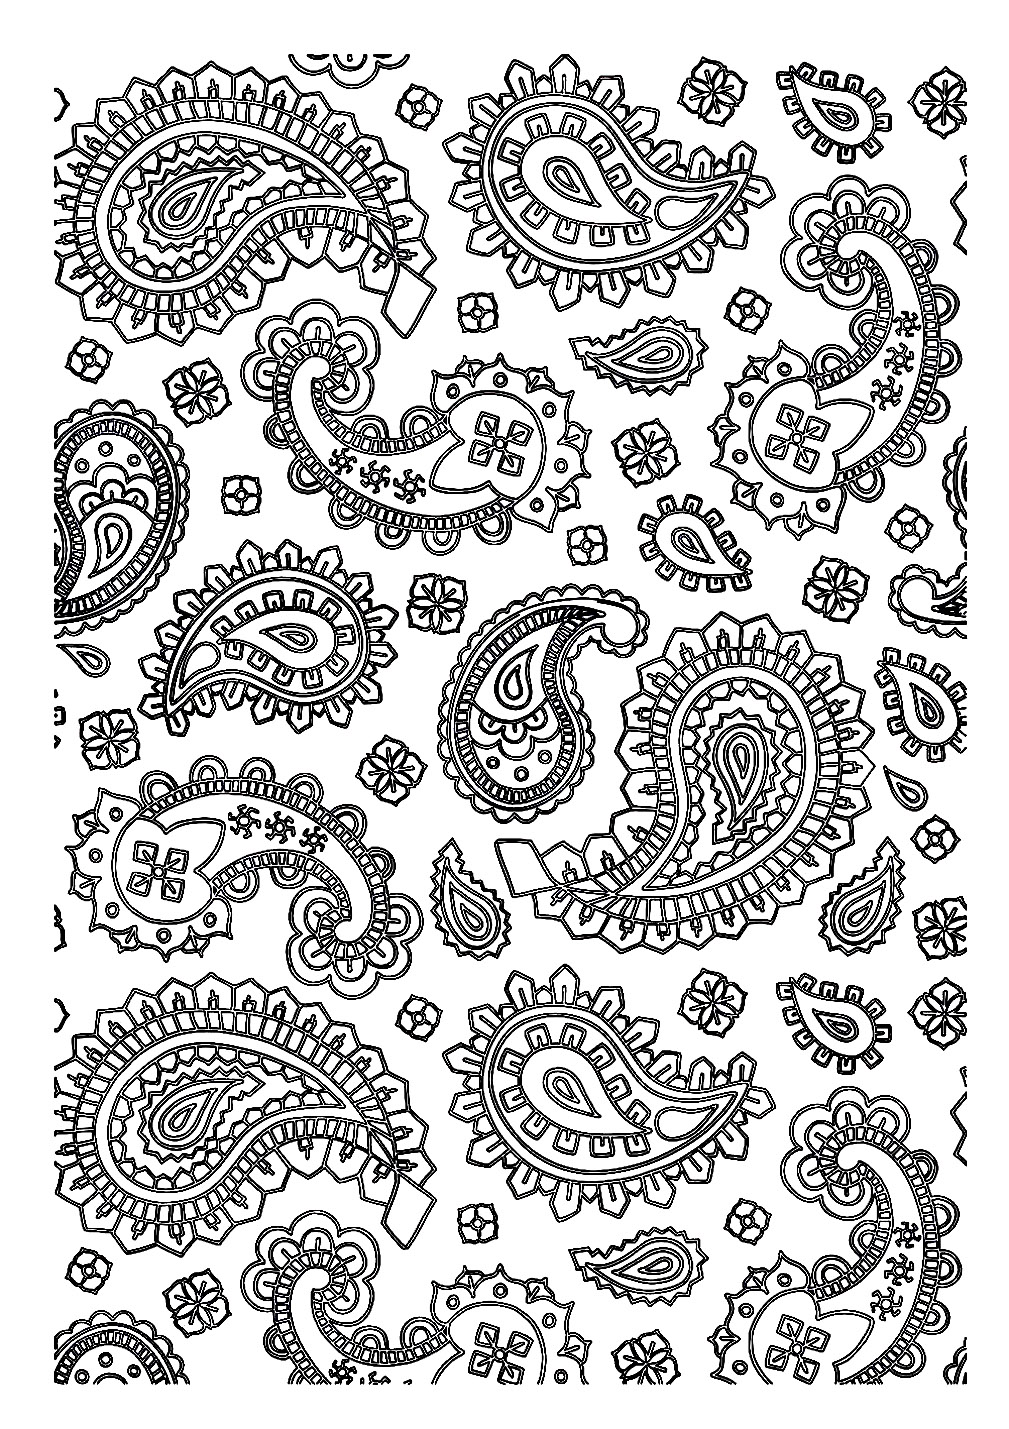 Paisley patterns